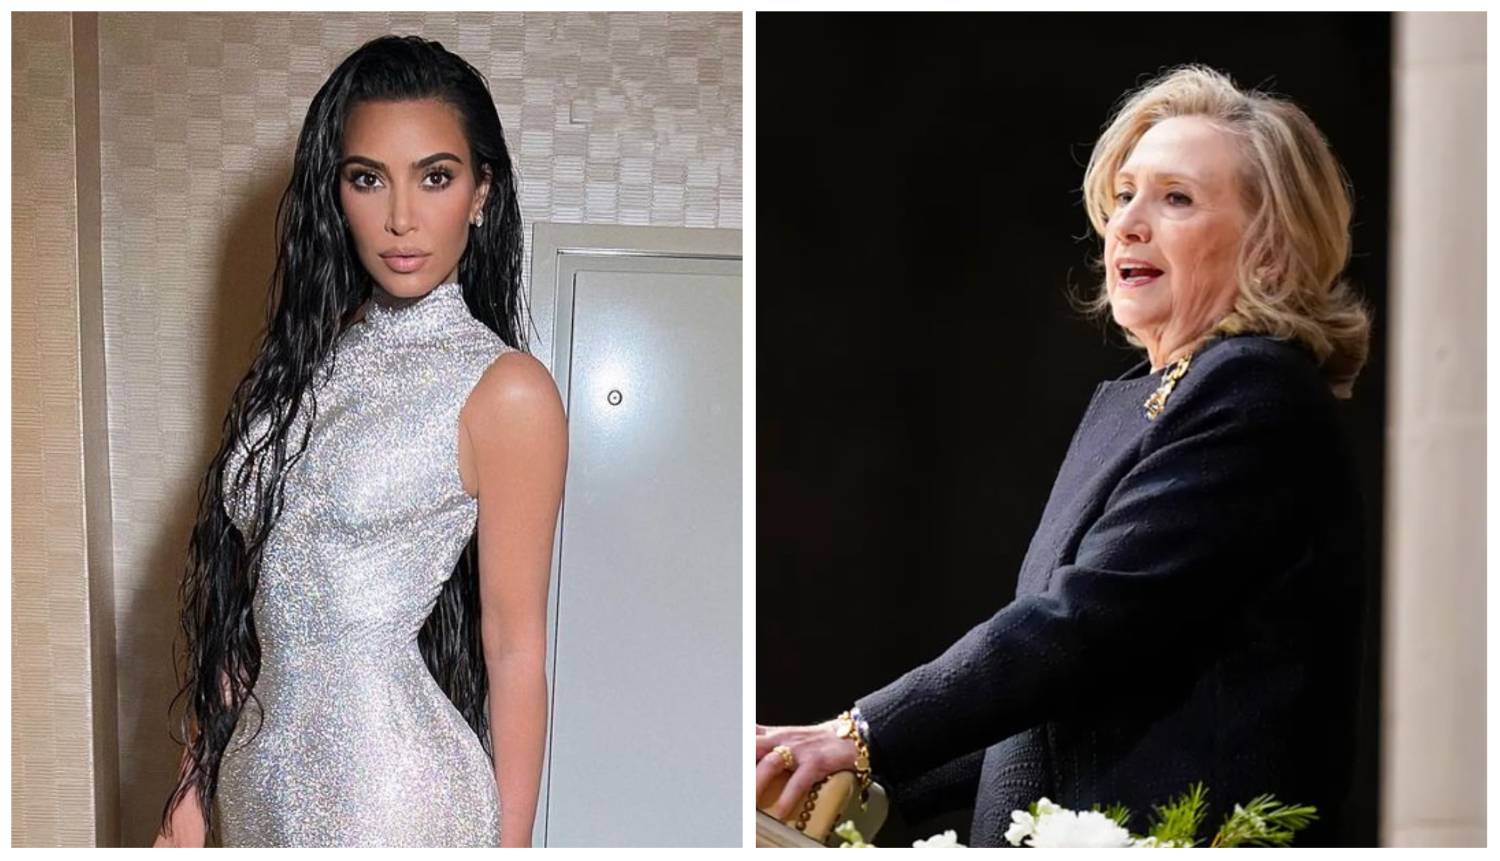 Kim pobijedila Hillary Clinton u kvizu o poznavanju prava: 'Bilo je impresivno, ona je razborita'